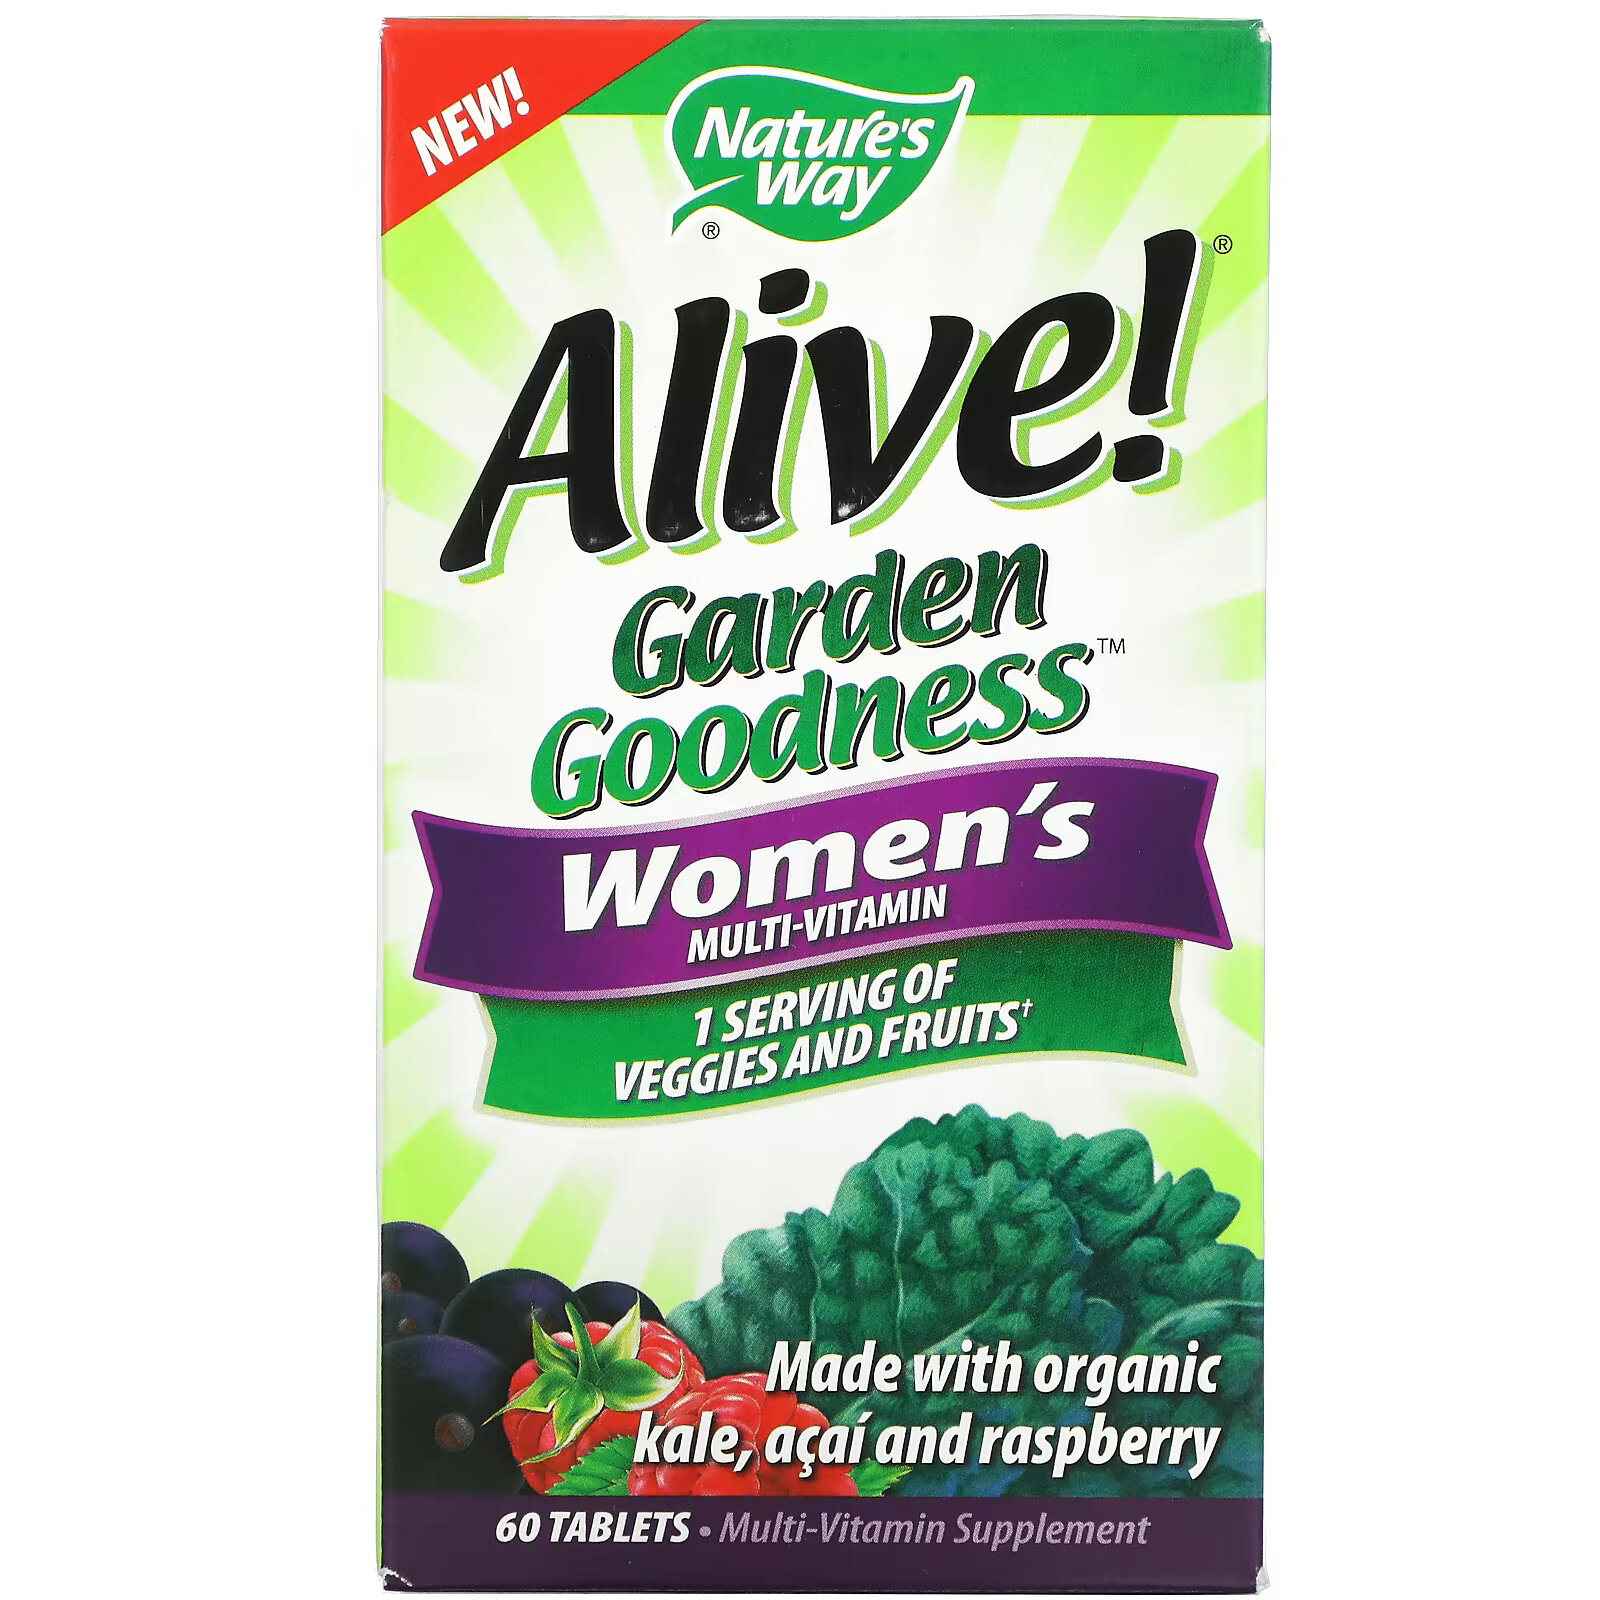 Мультивитамин Nature's Way Alive! Garden Goodness для женщин, 60 таблеток fruily органический мультивитамин для женщин с экстрактом клюквы фруктовый коктейль 60 жевательных таблеток